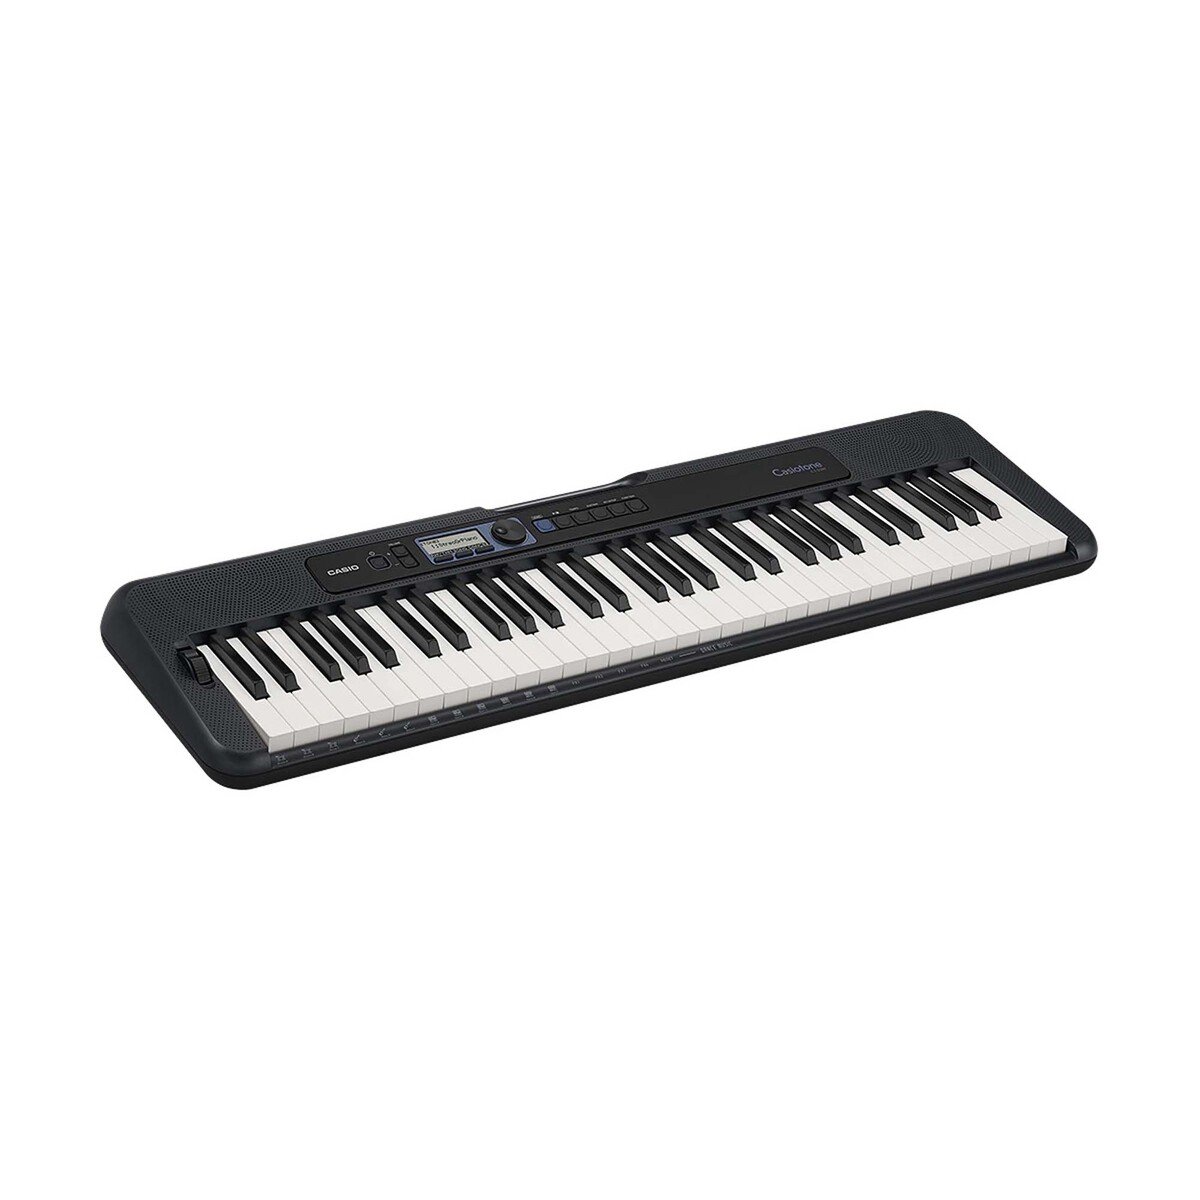 Casio Keyboard CTS-300 61 Keys